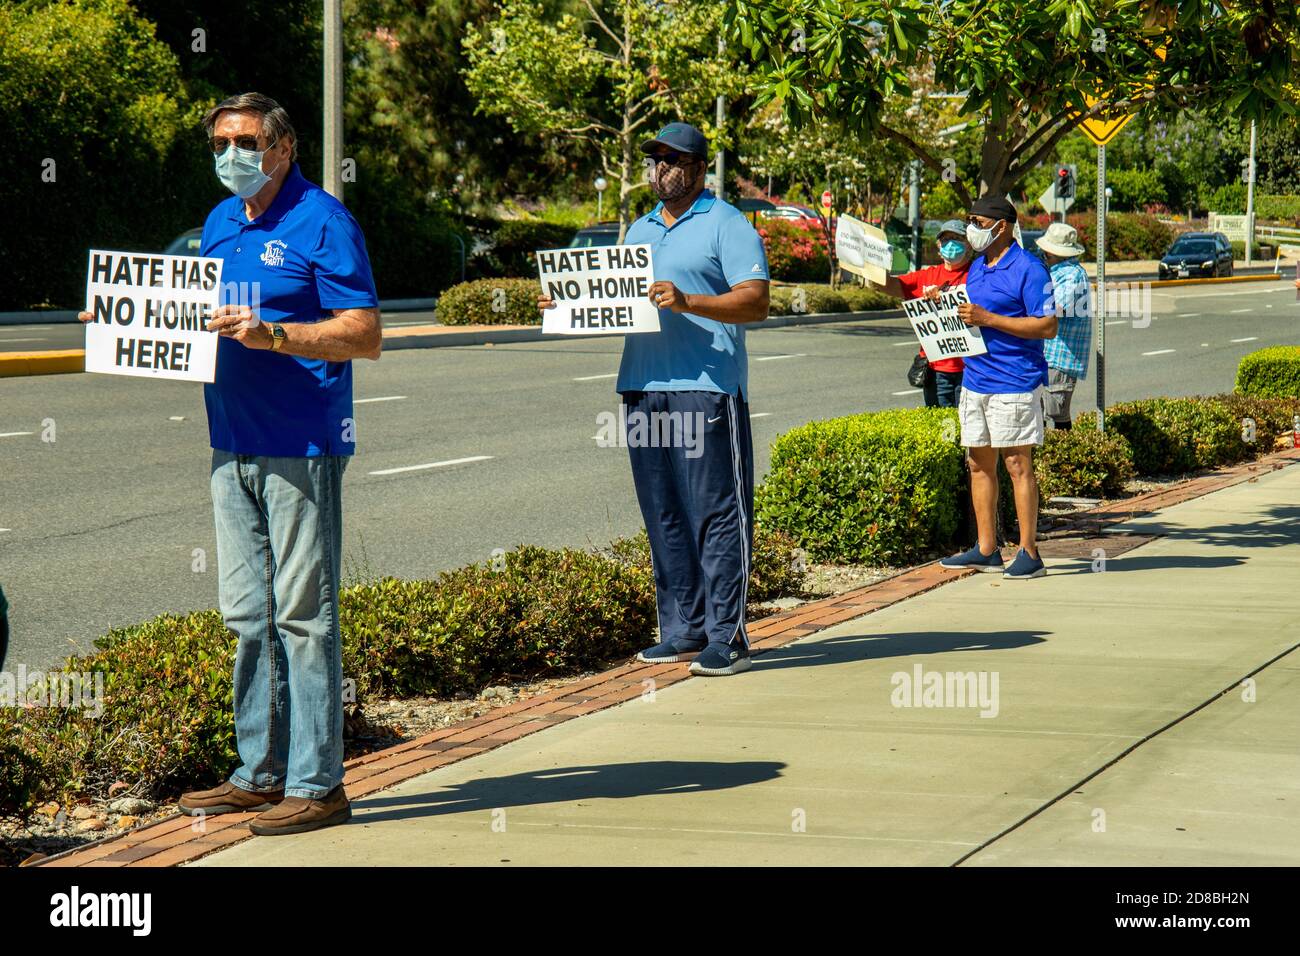 Les résidents retraités portent des masques en raison de la pandémie du coronavirus Ils tiennent une démonstration silencieuse en faveur des Noirs Les vies comptent mouvement à Laguna Banque D'Images